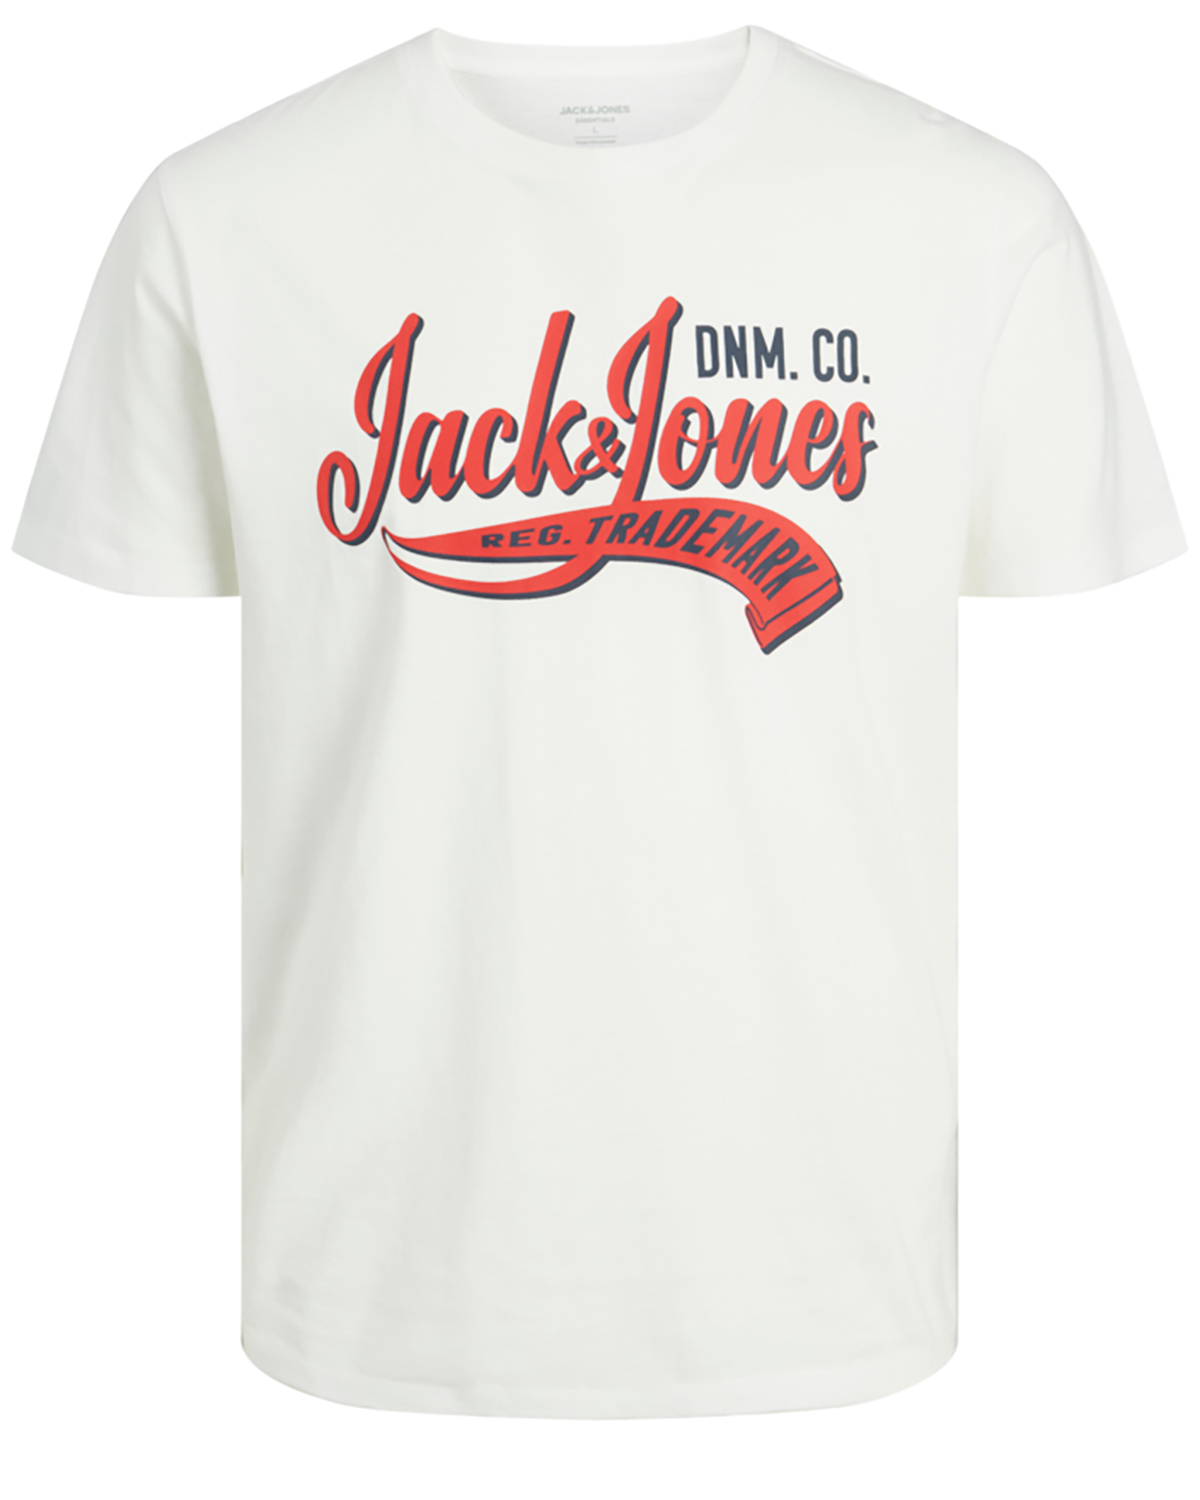 Jack & Jones JR t-shirt s/s, Logo tee, hvid - 152,12år